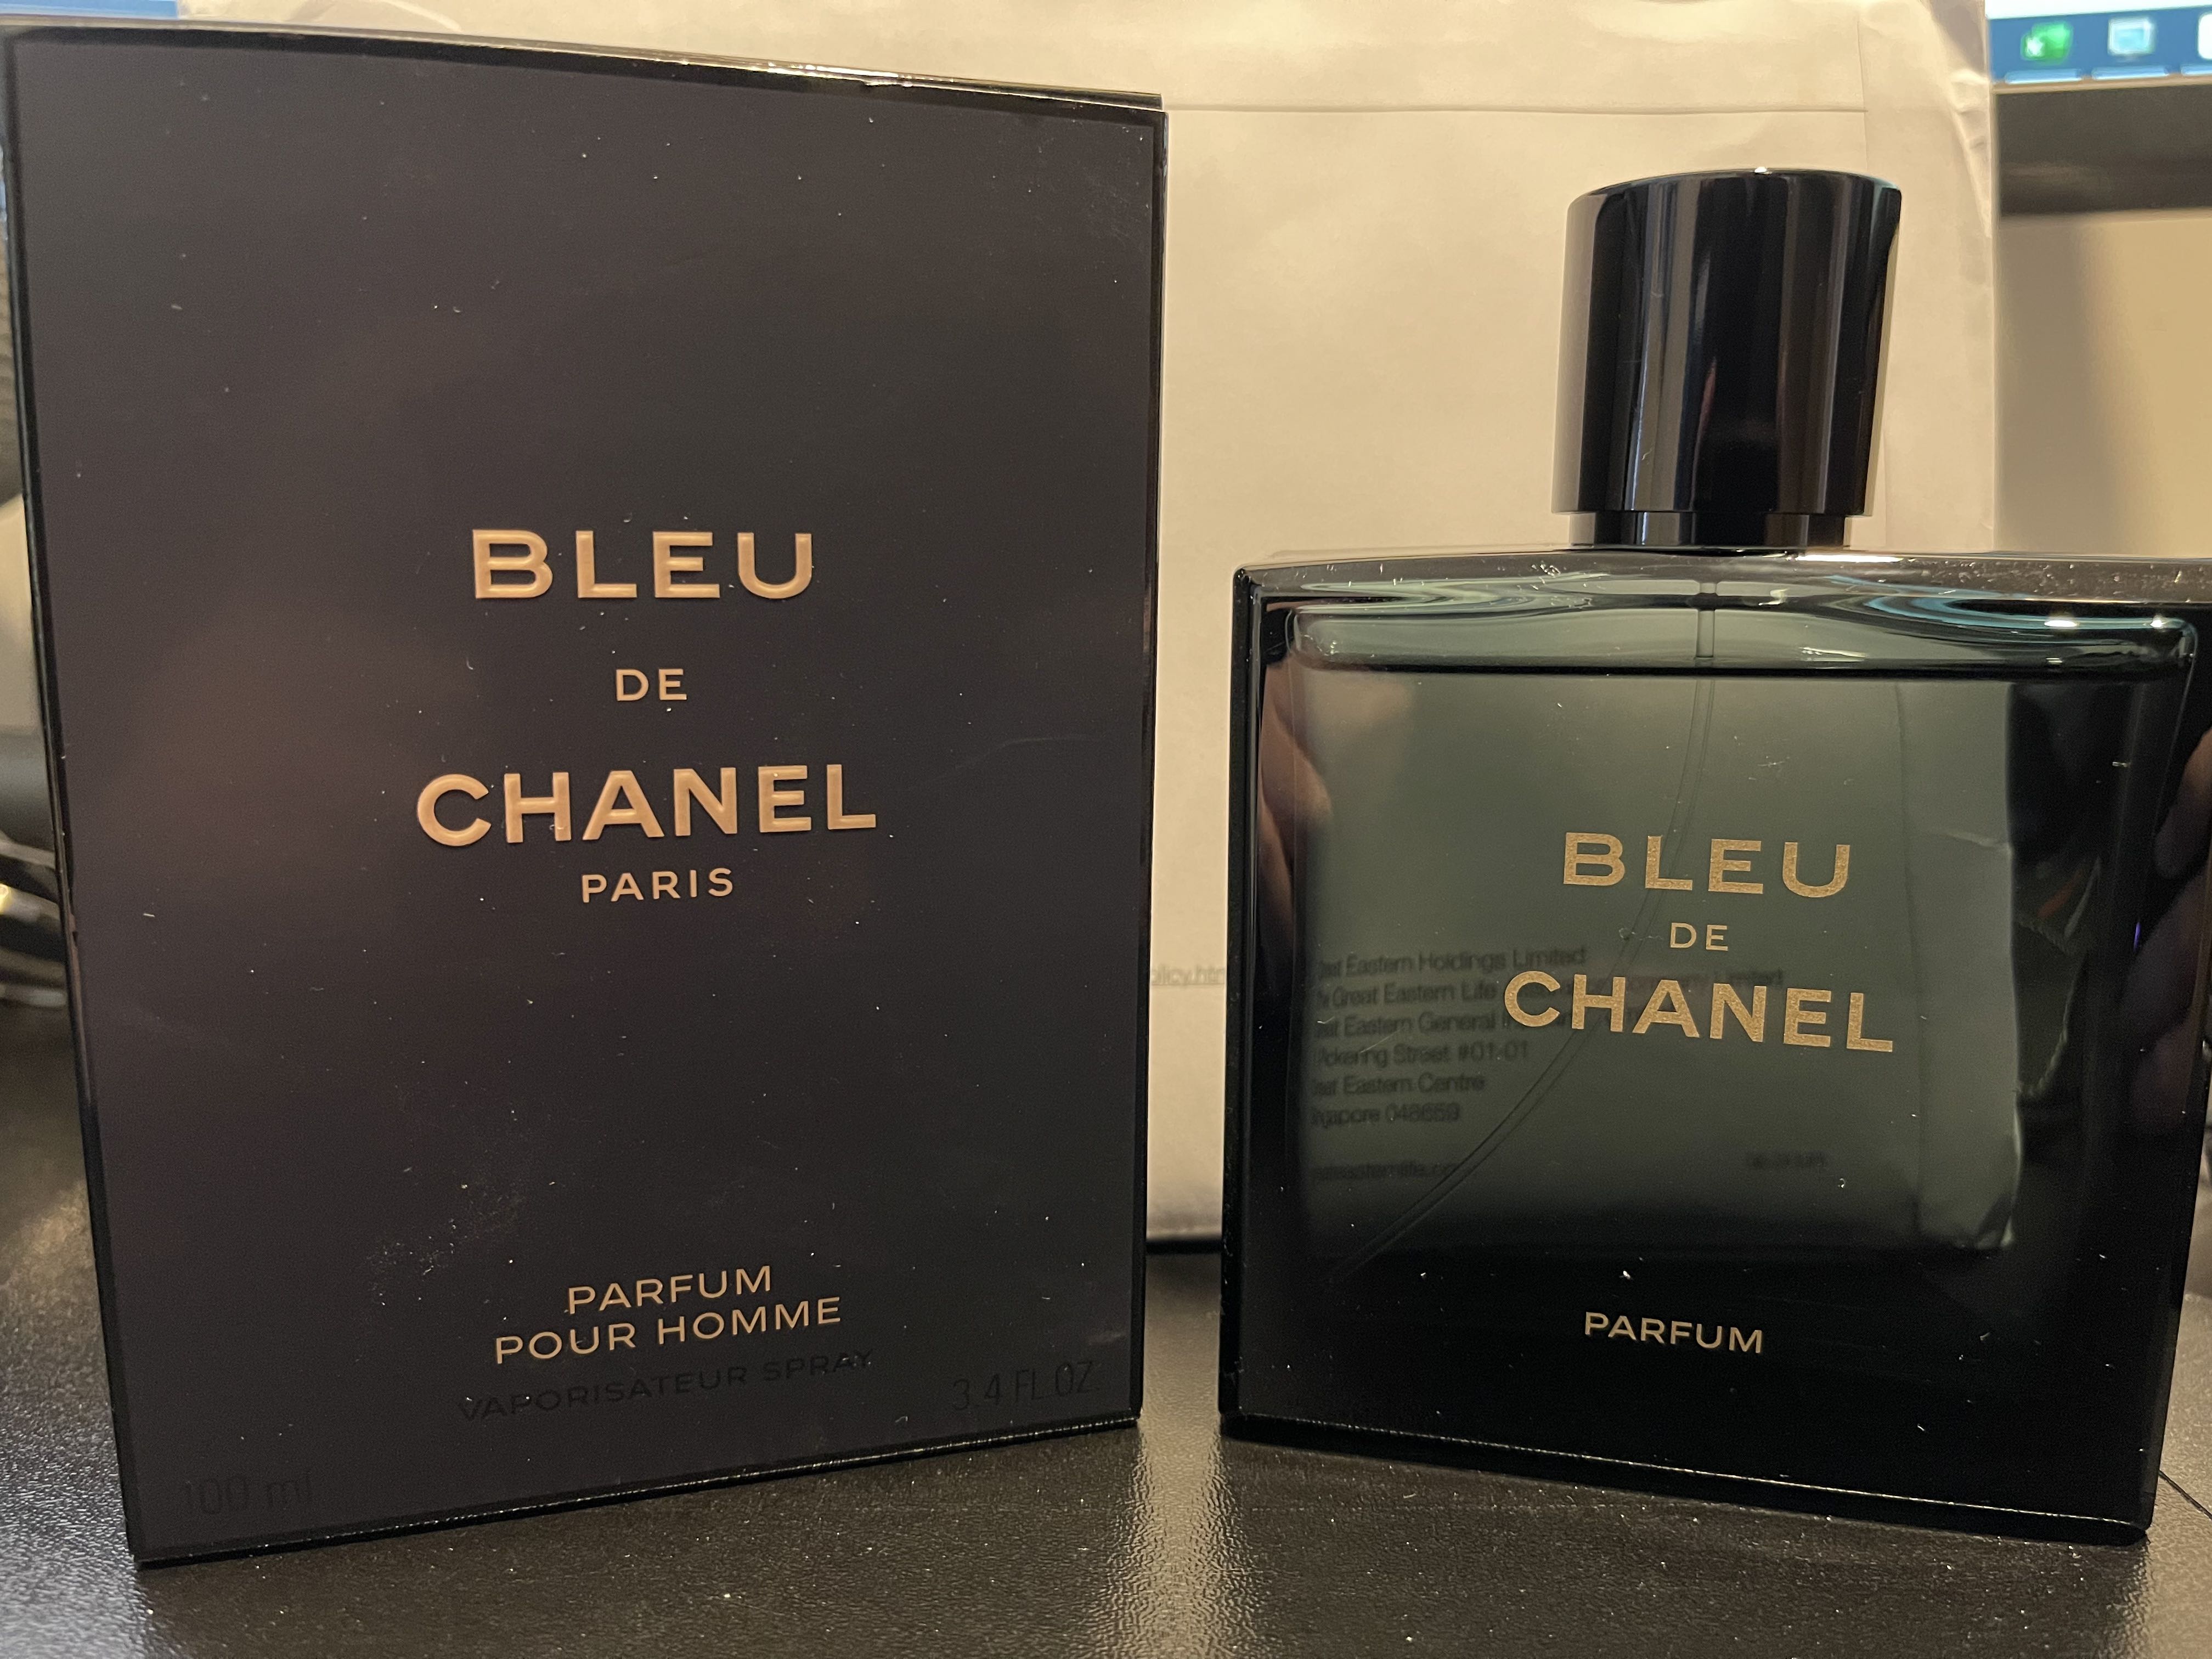 Bleu de Chanel Parfum 100ml, Beauty & Personal Care, Fragrance